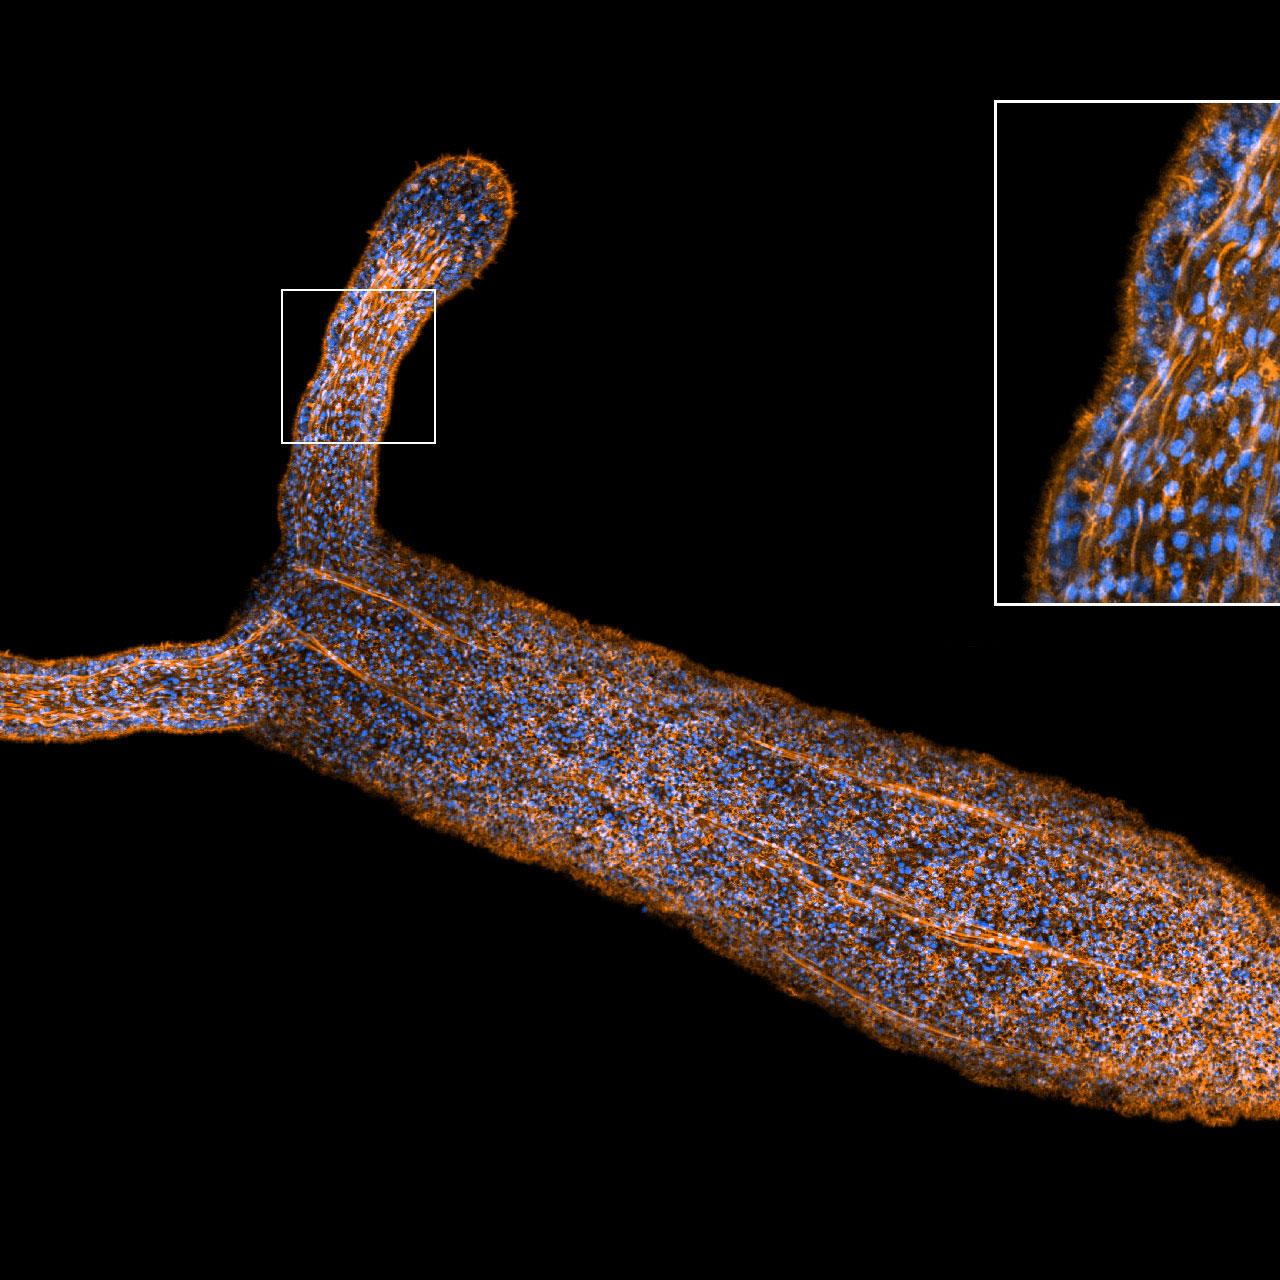 Image d'une anémone de mer (Nematostella vectensis) capturée avec Airyscan 2 en mode haute sensibilité.